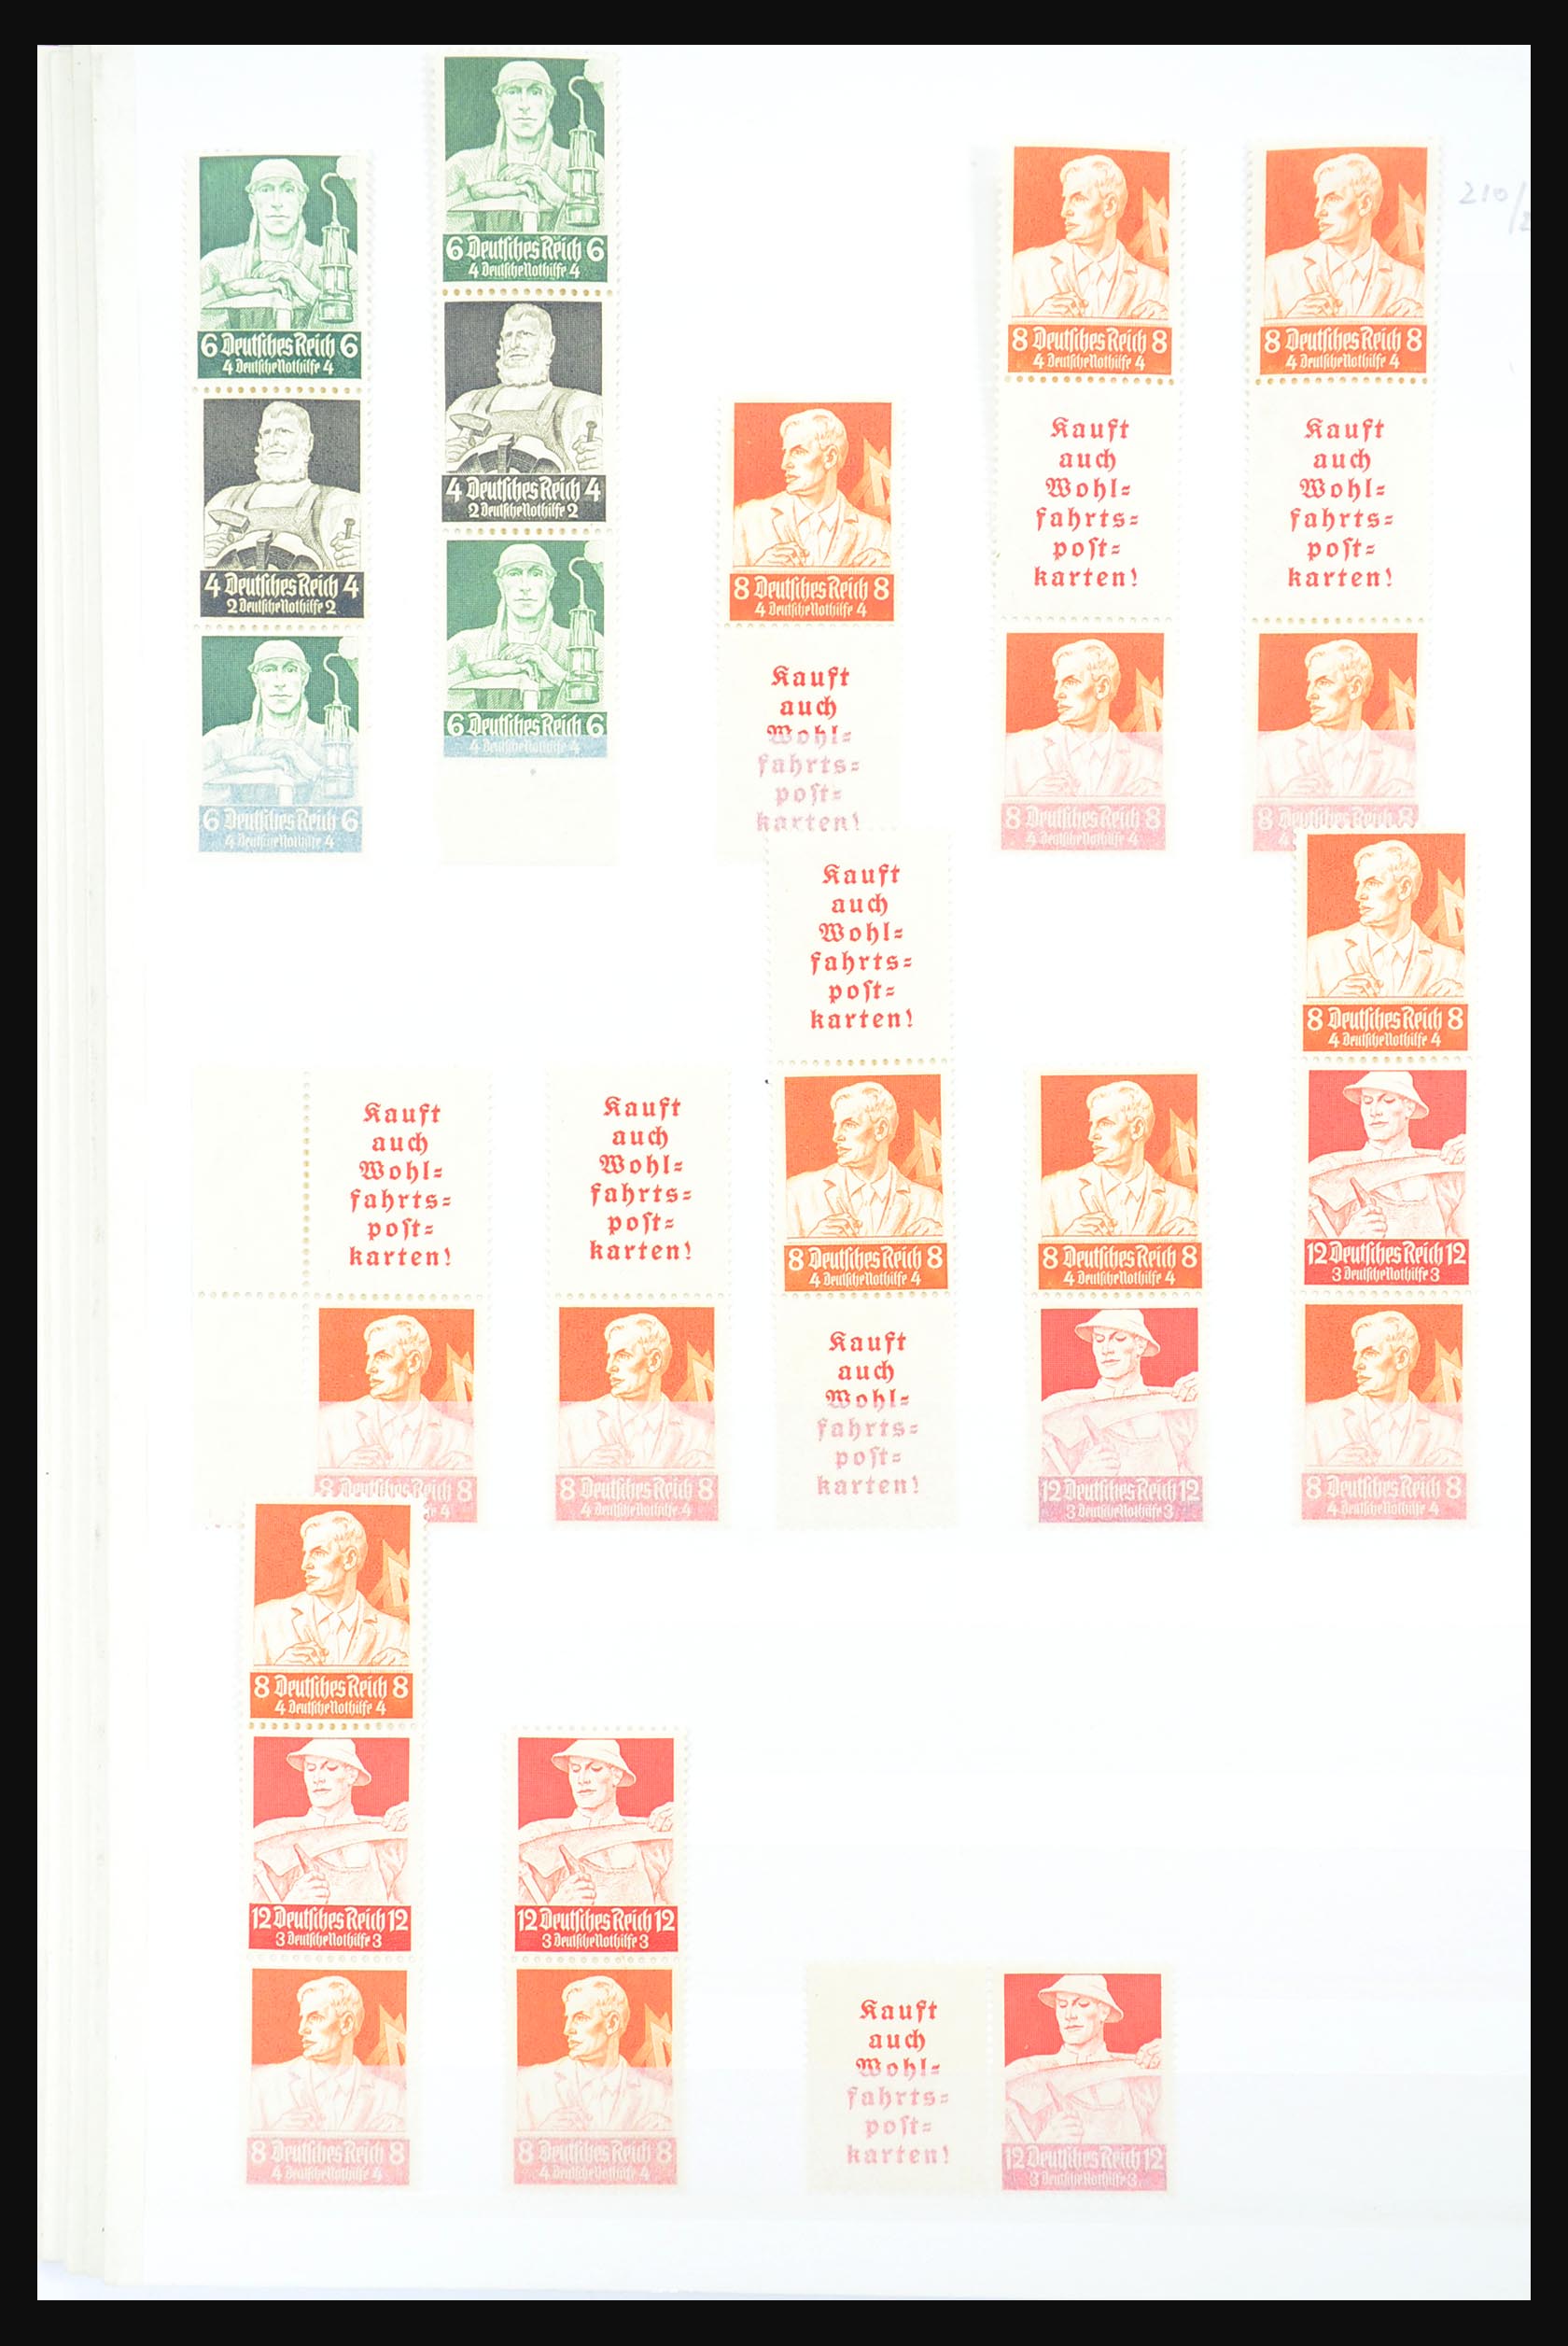 31391 024 - 31391 Duitse Rijk combinaties postfris 1913-1941.